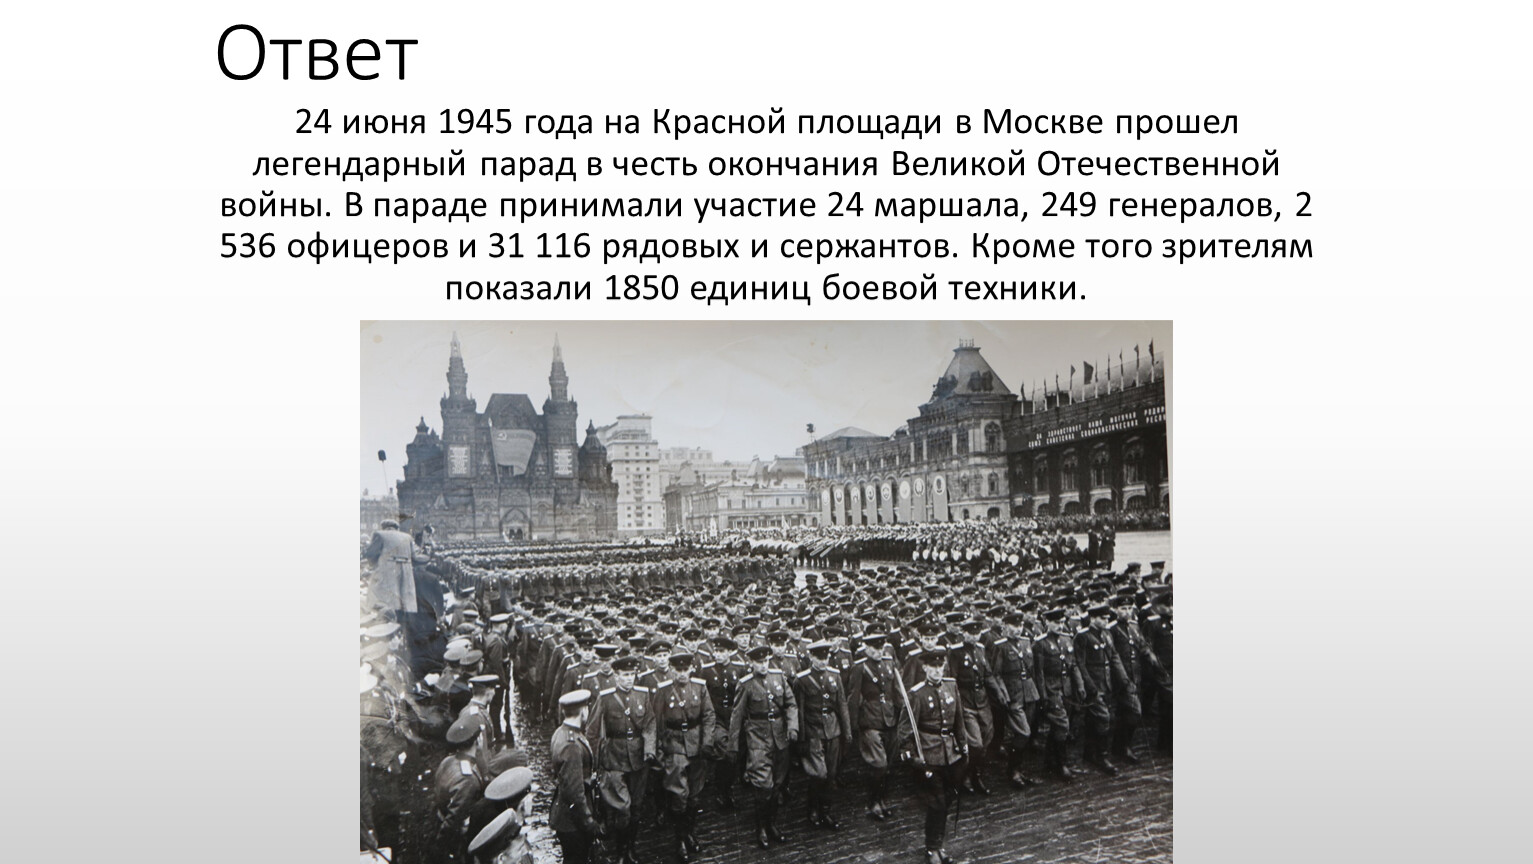 Е годы именно в это. Парад Победы сообщение. 24 Июня 1945 года событие. Парад Победы 1945 года. 24 Июня 1945 событие в Москве.